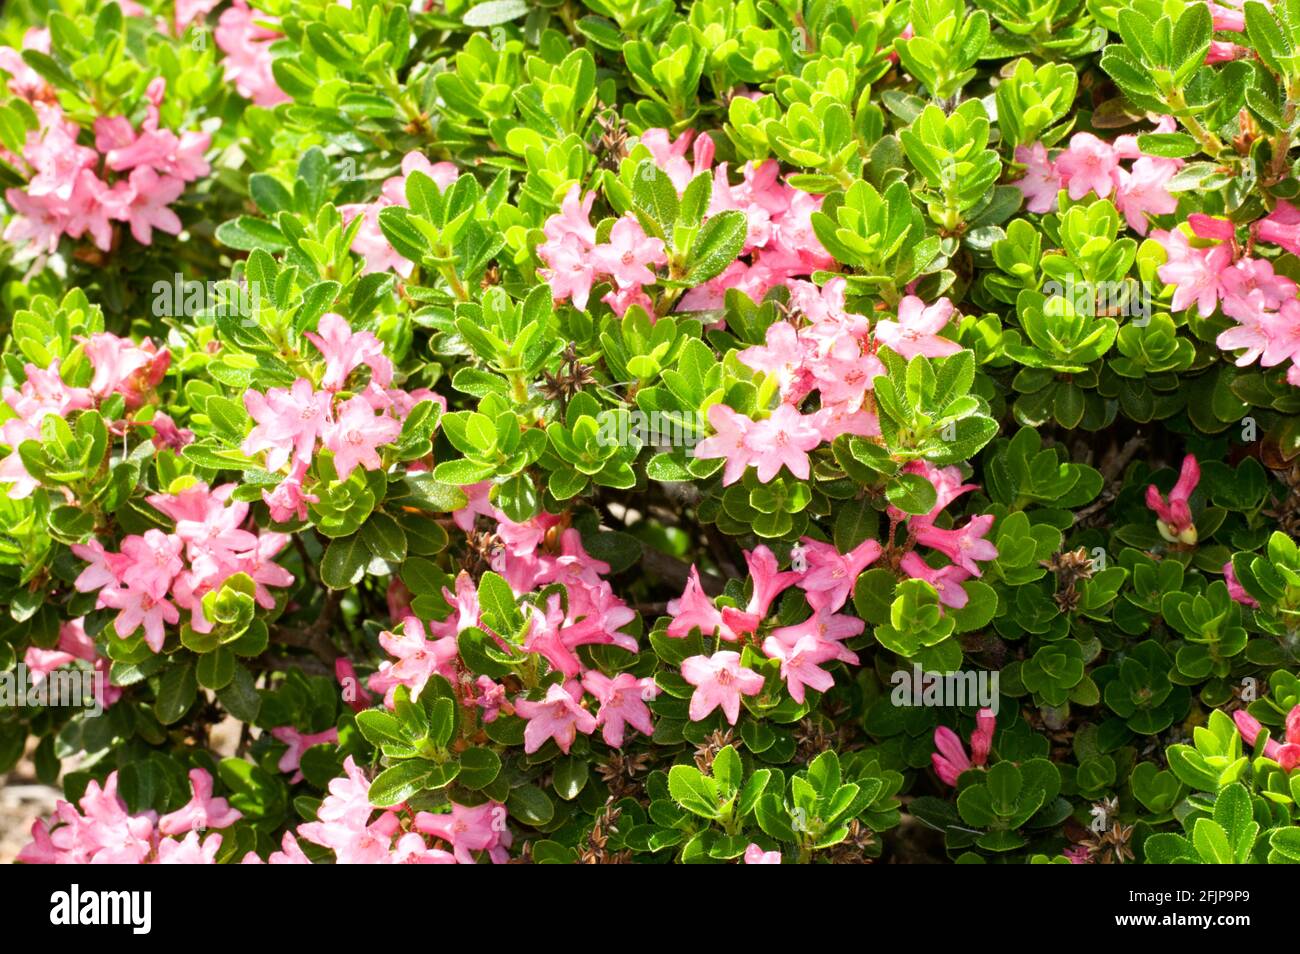 Hairy Alpenrose (Rhododendron hirsutum), alpine rush, hairy alpine rose Stock Photo